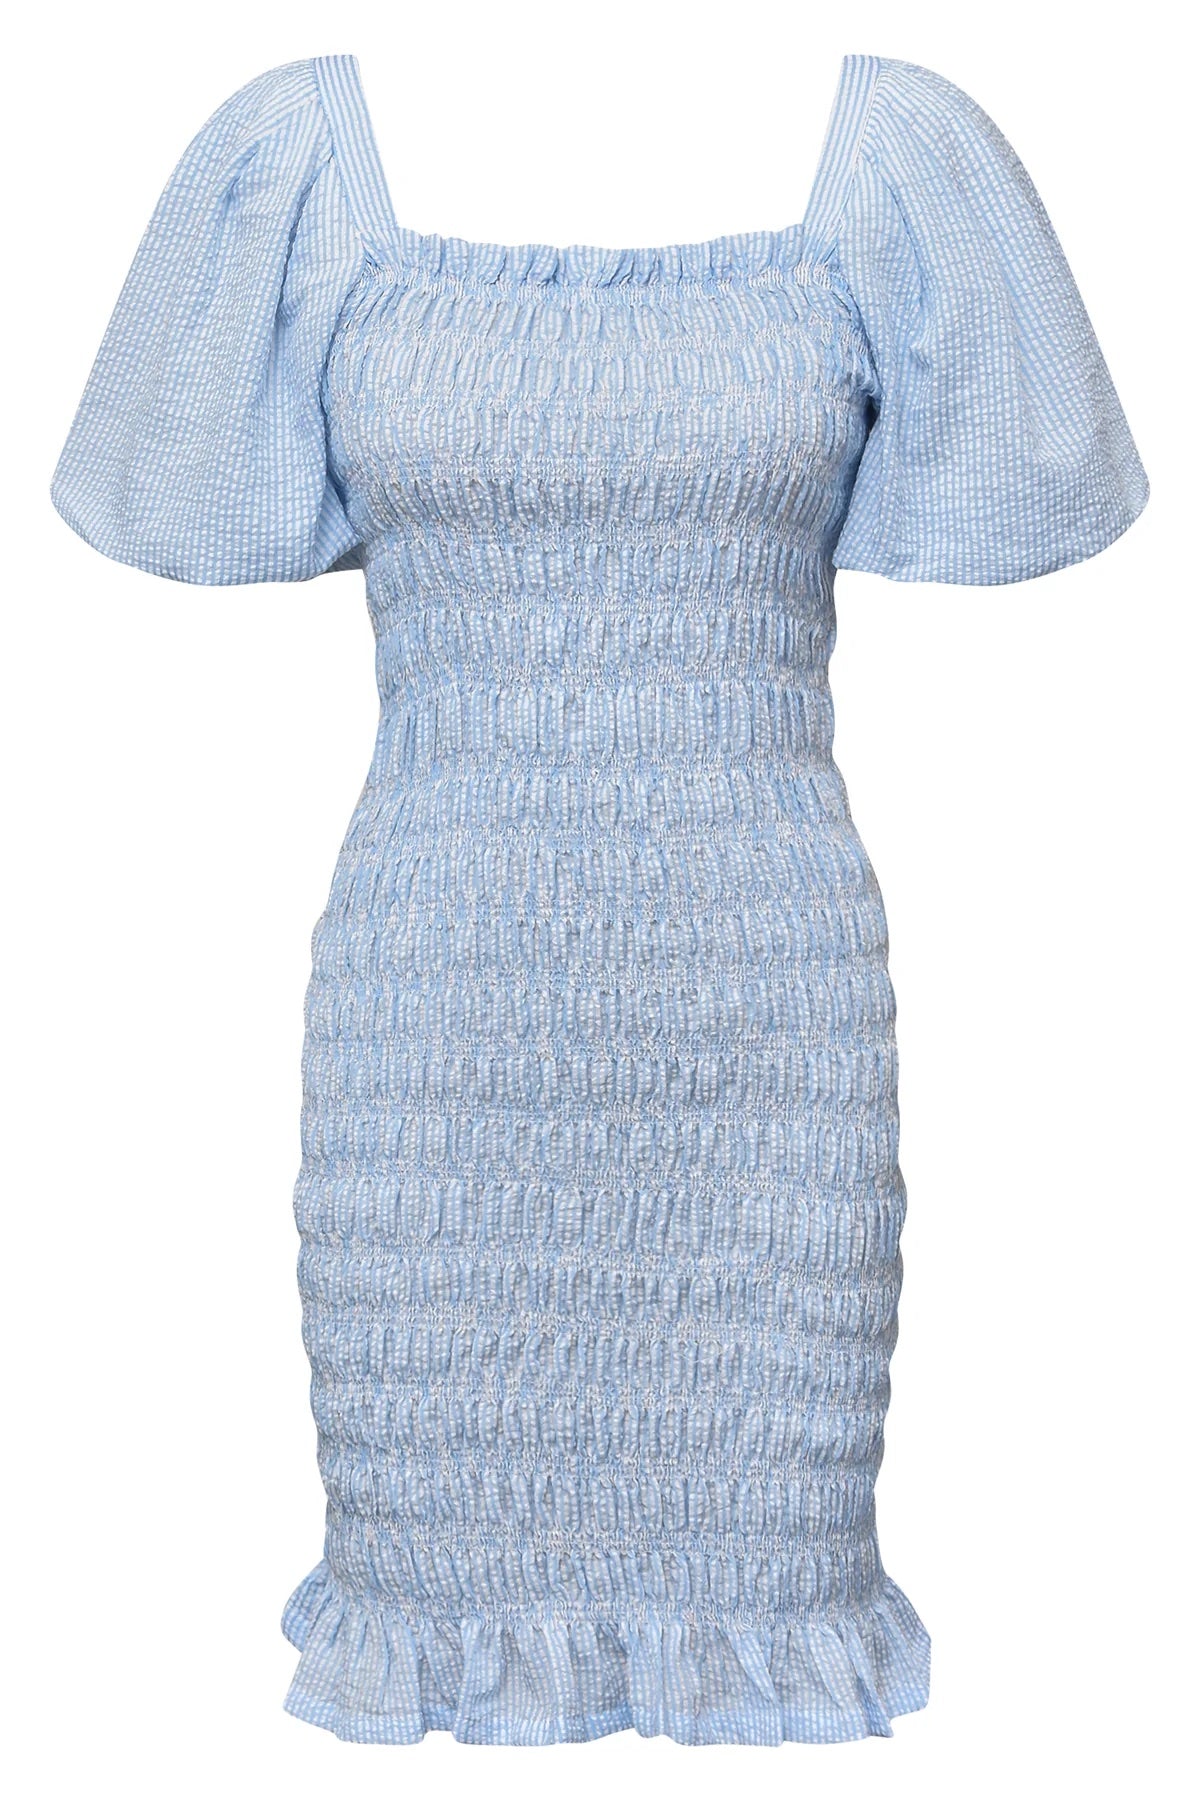 A-View Rikko Dress Blue-White Stripe